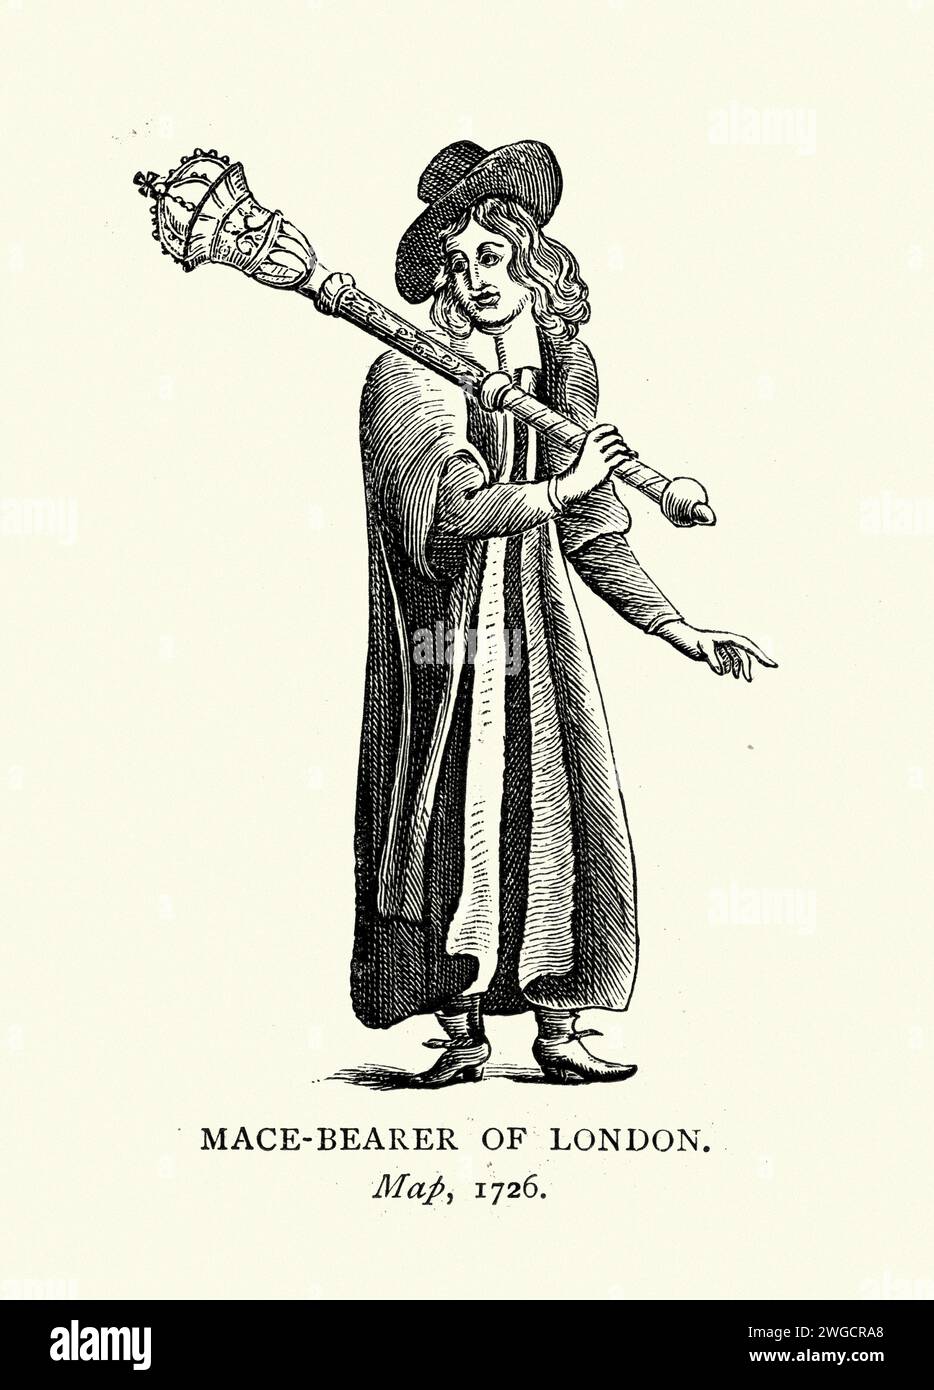 Porteur de masse cérémonielle de Londres, 18e siècle, 1726, costume d'époque de mode, Histoire anglaise Banque D'Images